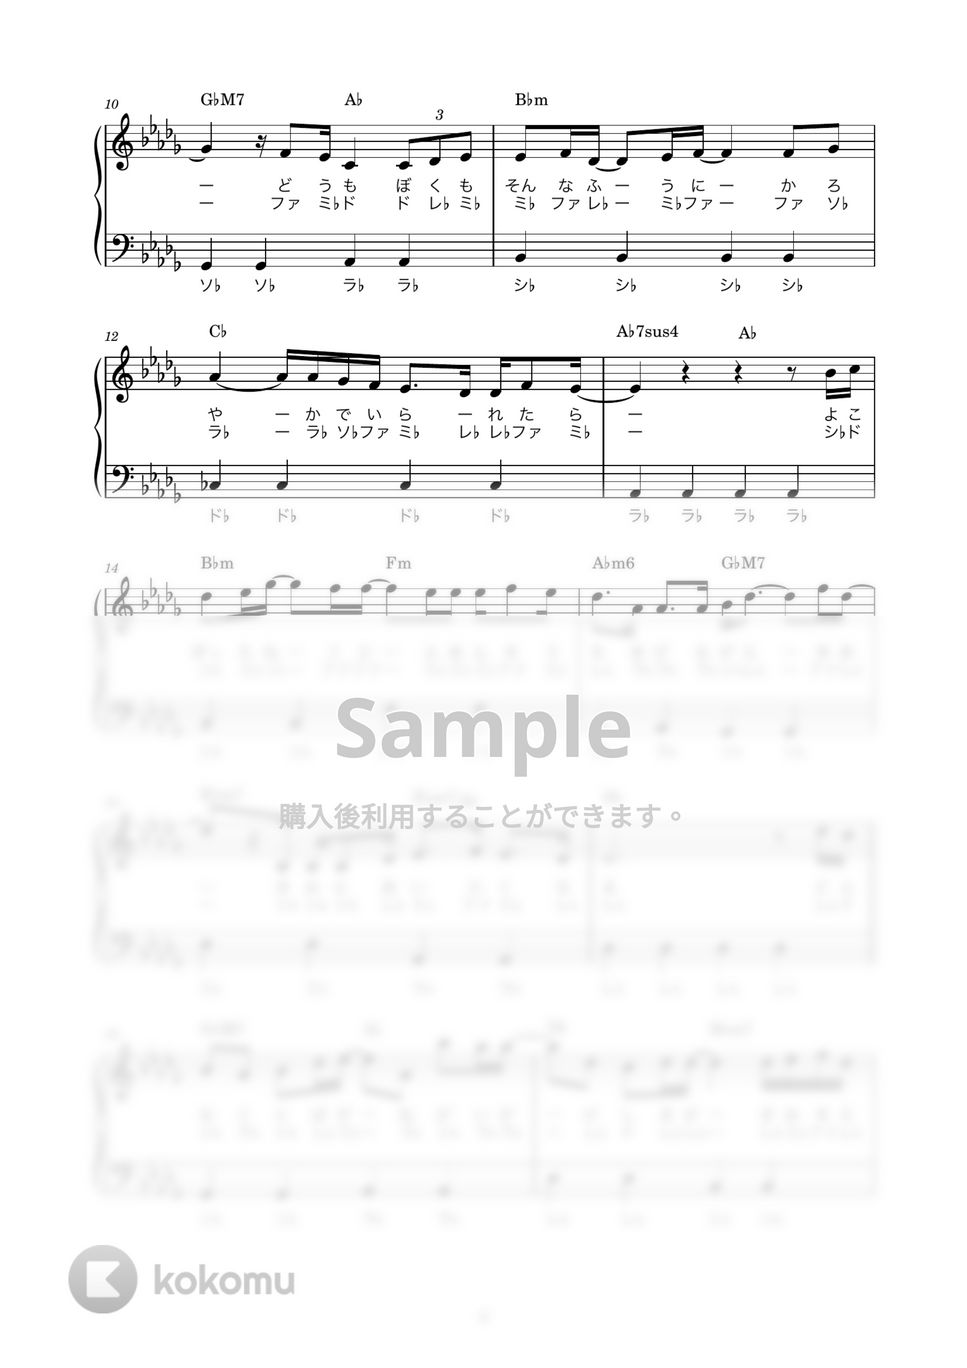 back number - アイラブユー (ピアノ楽譜 / かんたん両手 / 歌詞付き / ドレミ付き / 初心者向き) by piano.tokyo